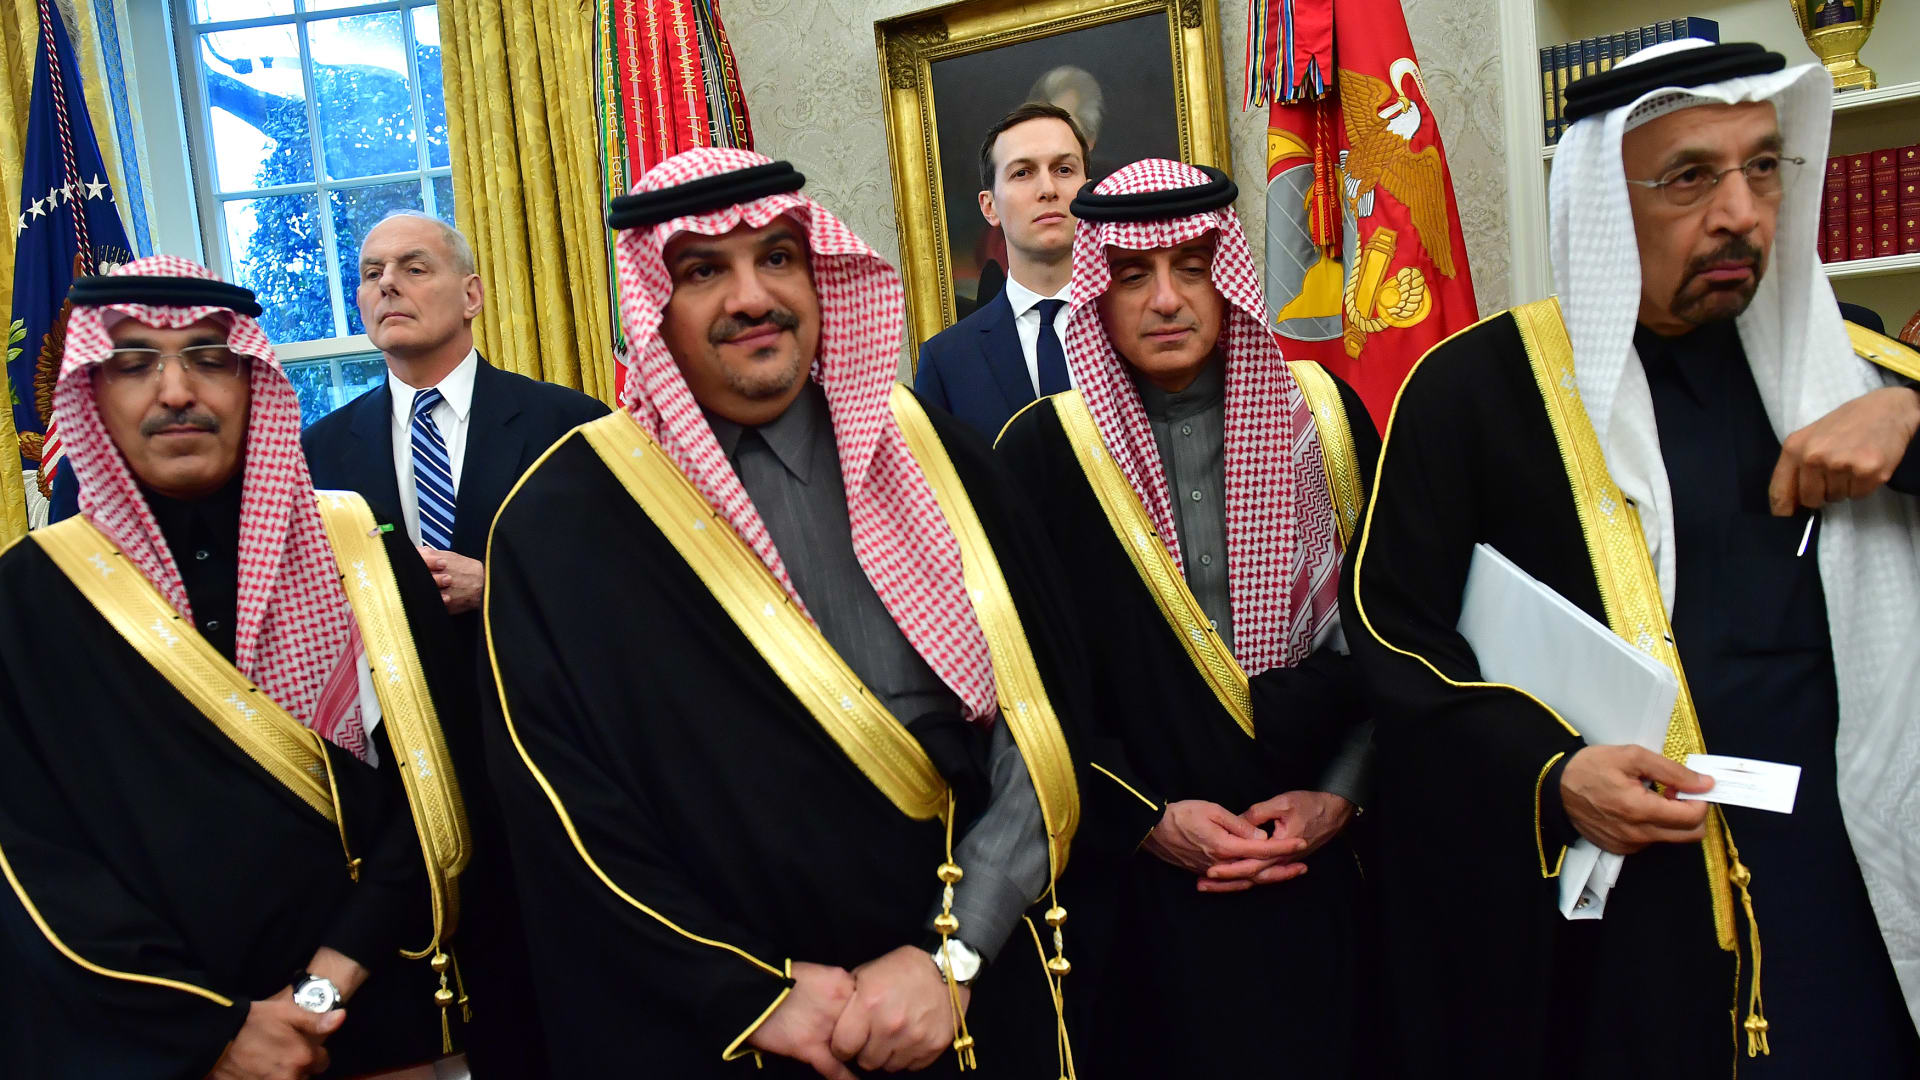 كوشنر يتحدث عن رسائل من محمد بن سلمان وكواليس زيارة ترامب للسعودية كأول دولة